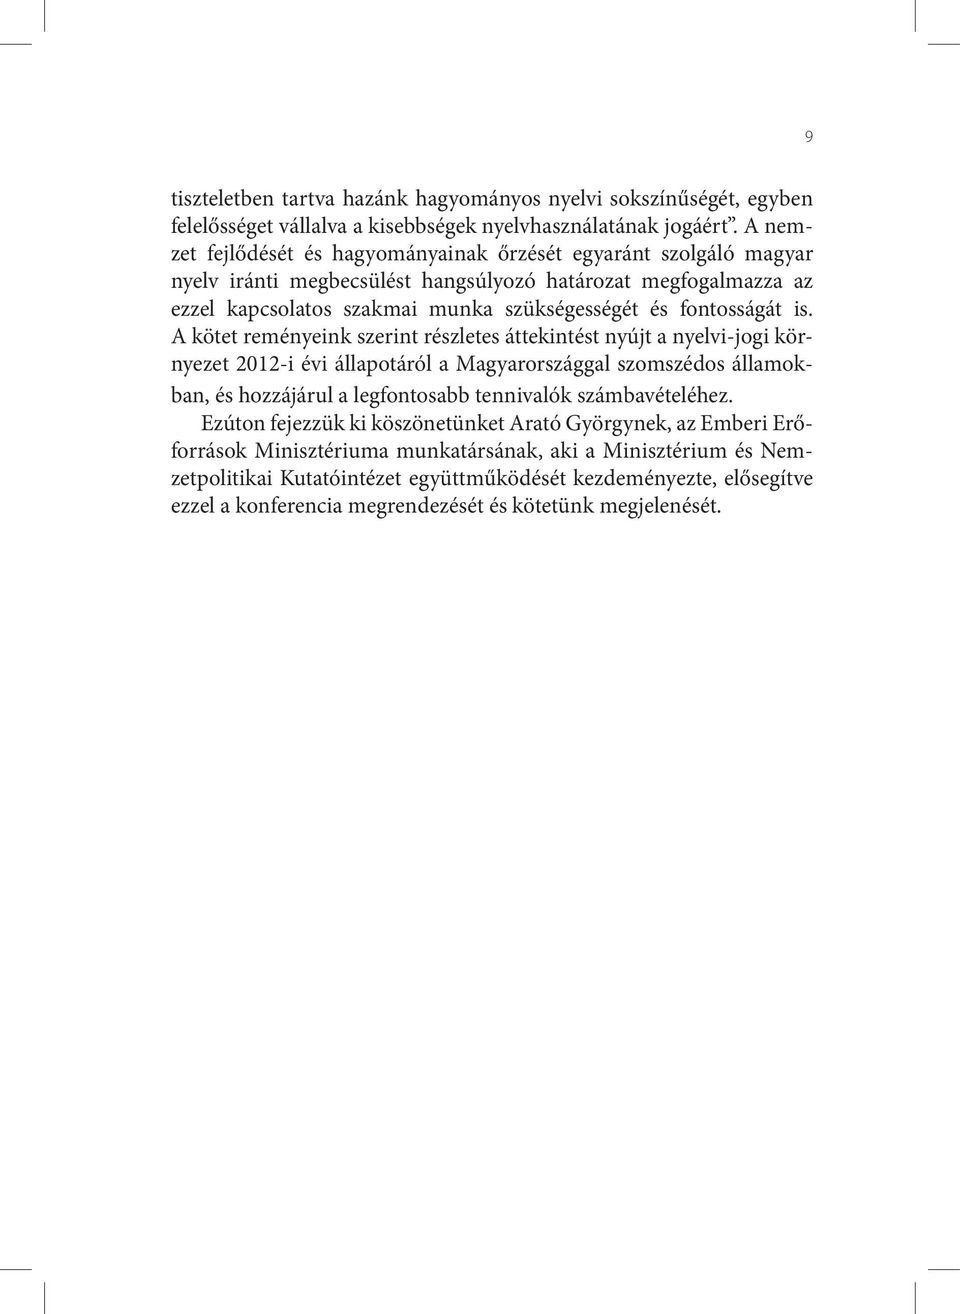 is. A kötet reményeink szerint részletes áttekintést nyújt a nyelvi-jogi környezet 2012-i évi állapotáról a Magyarországgal szomszédos államokban, és hozzájárul a legfontosabb tennivalók